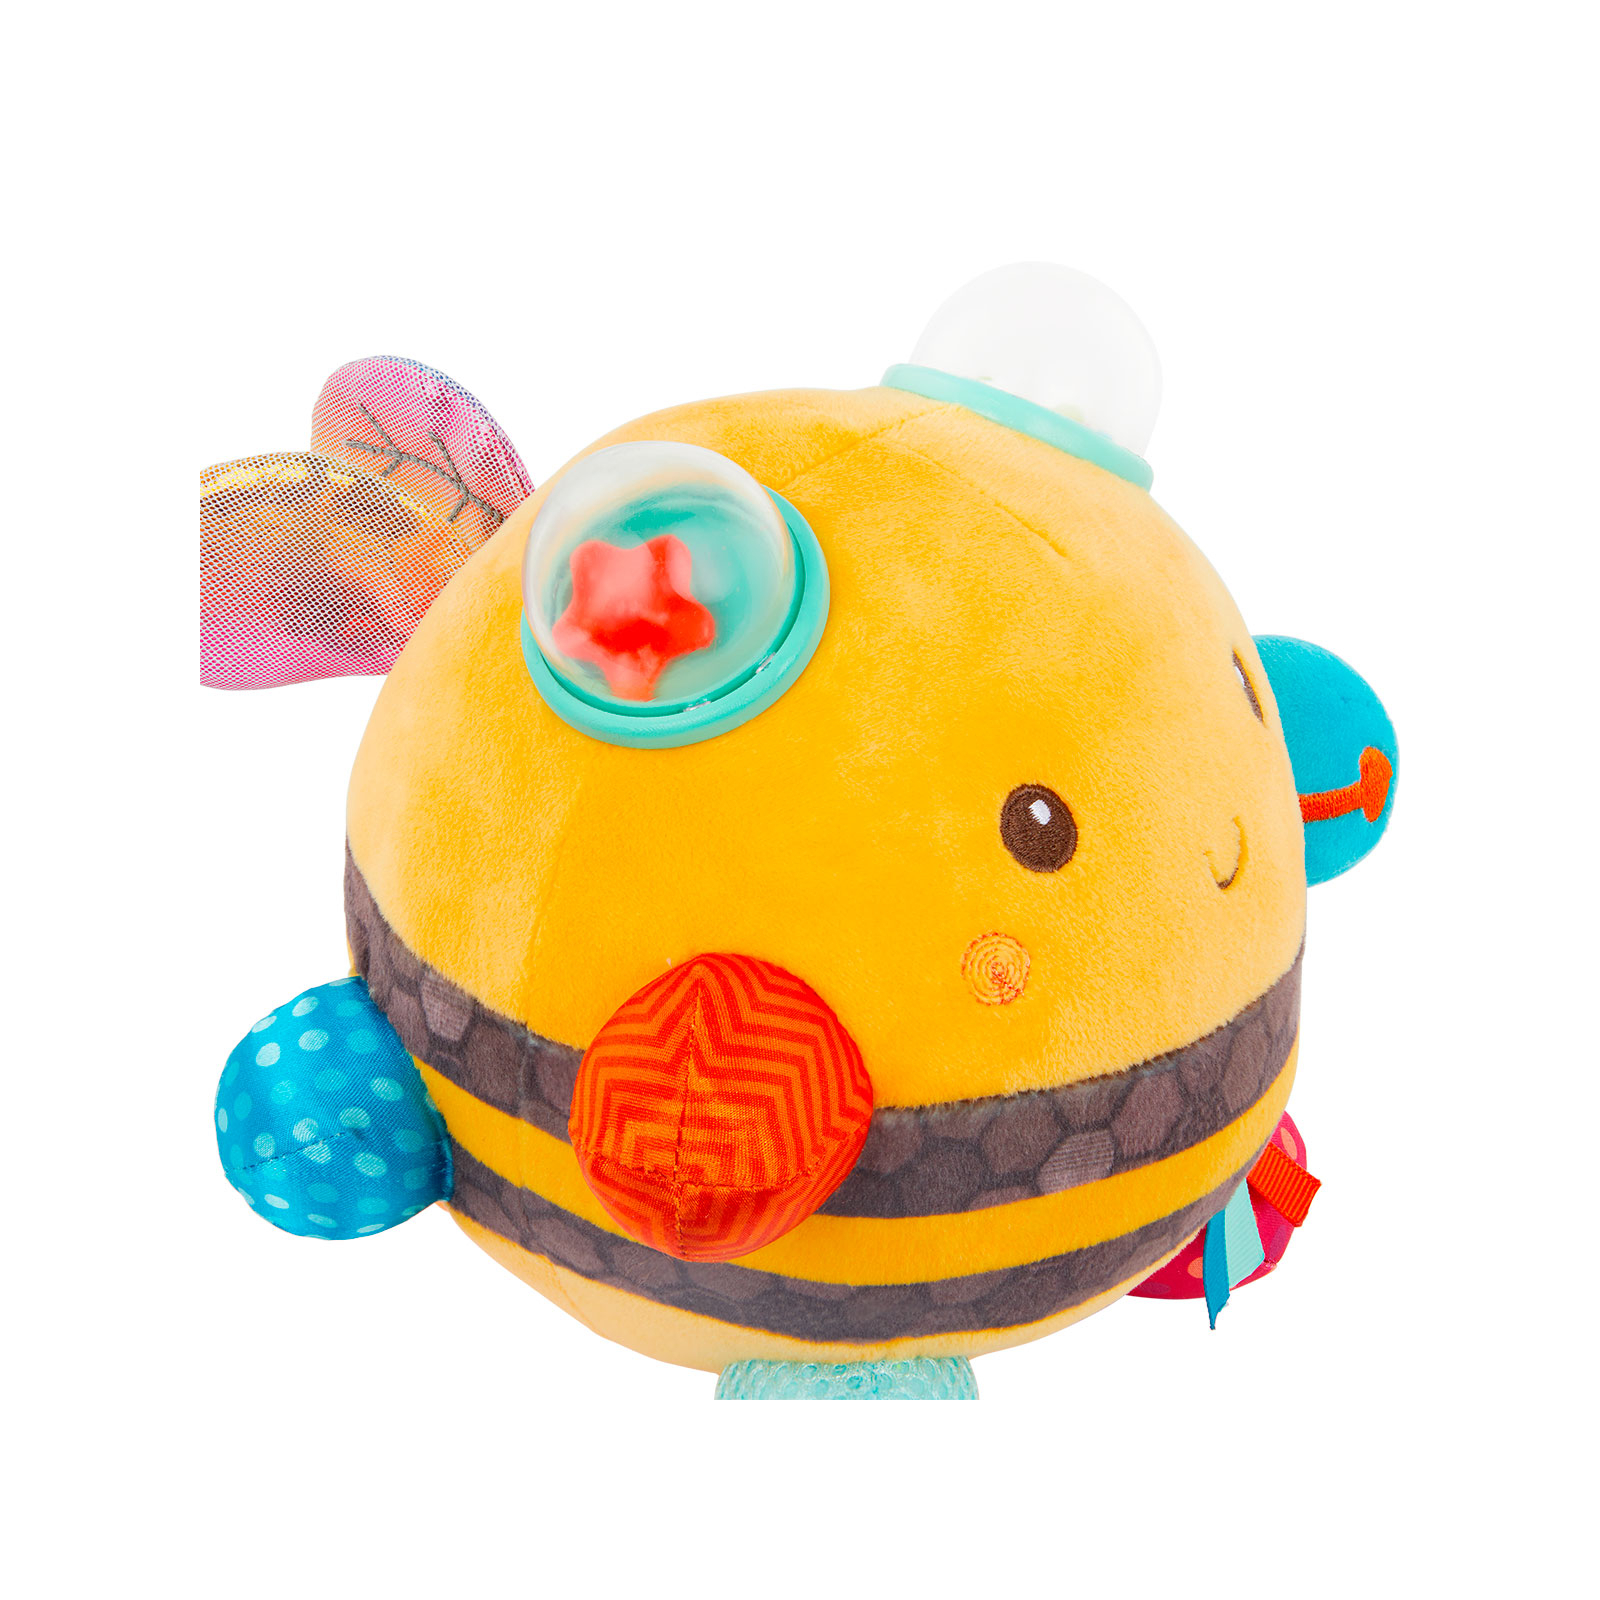 Развивающая игрушка Battat Сенсорная мягкая игрушка – Пчелка пушистик волчок (BX2037Z) изображение 6